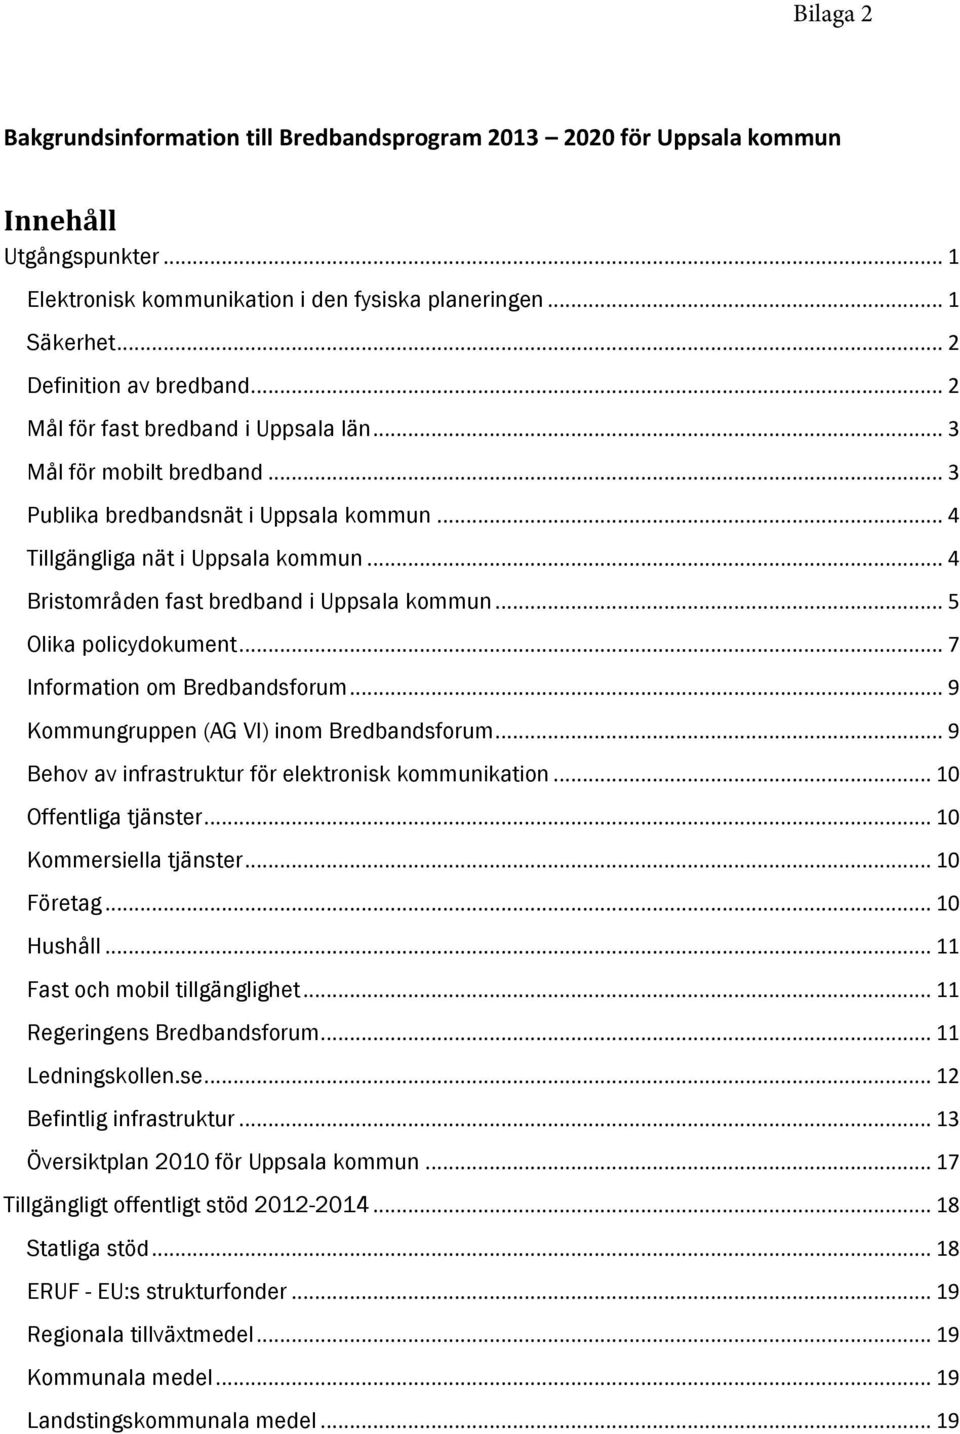 .. 4 Bristområden fast bredband i Uppsala kommun... 5 Olika policydokument... 7 Information om Bredbandsforum... 9 Kommungruppen (AG VI) inom Bredbandsforum.